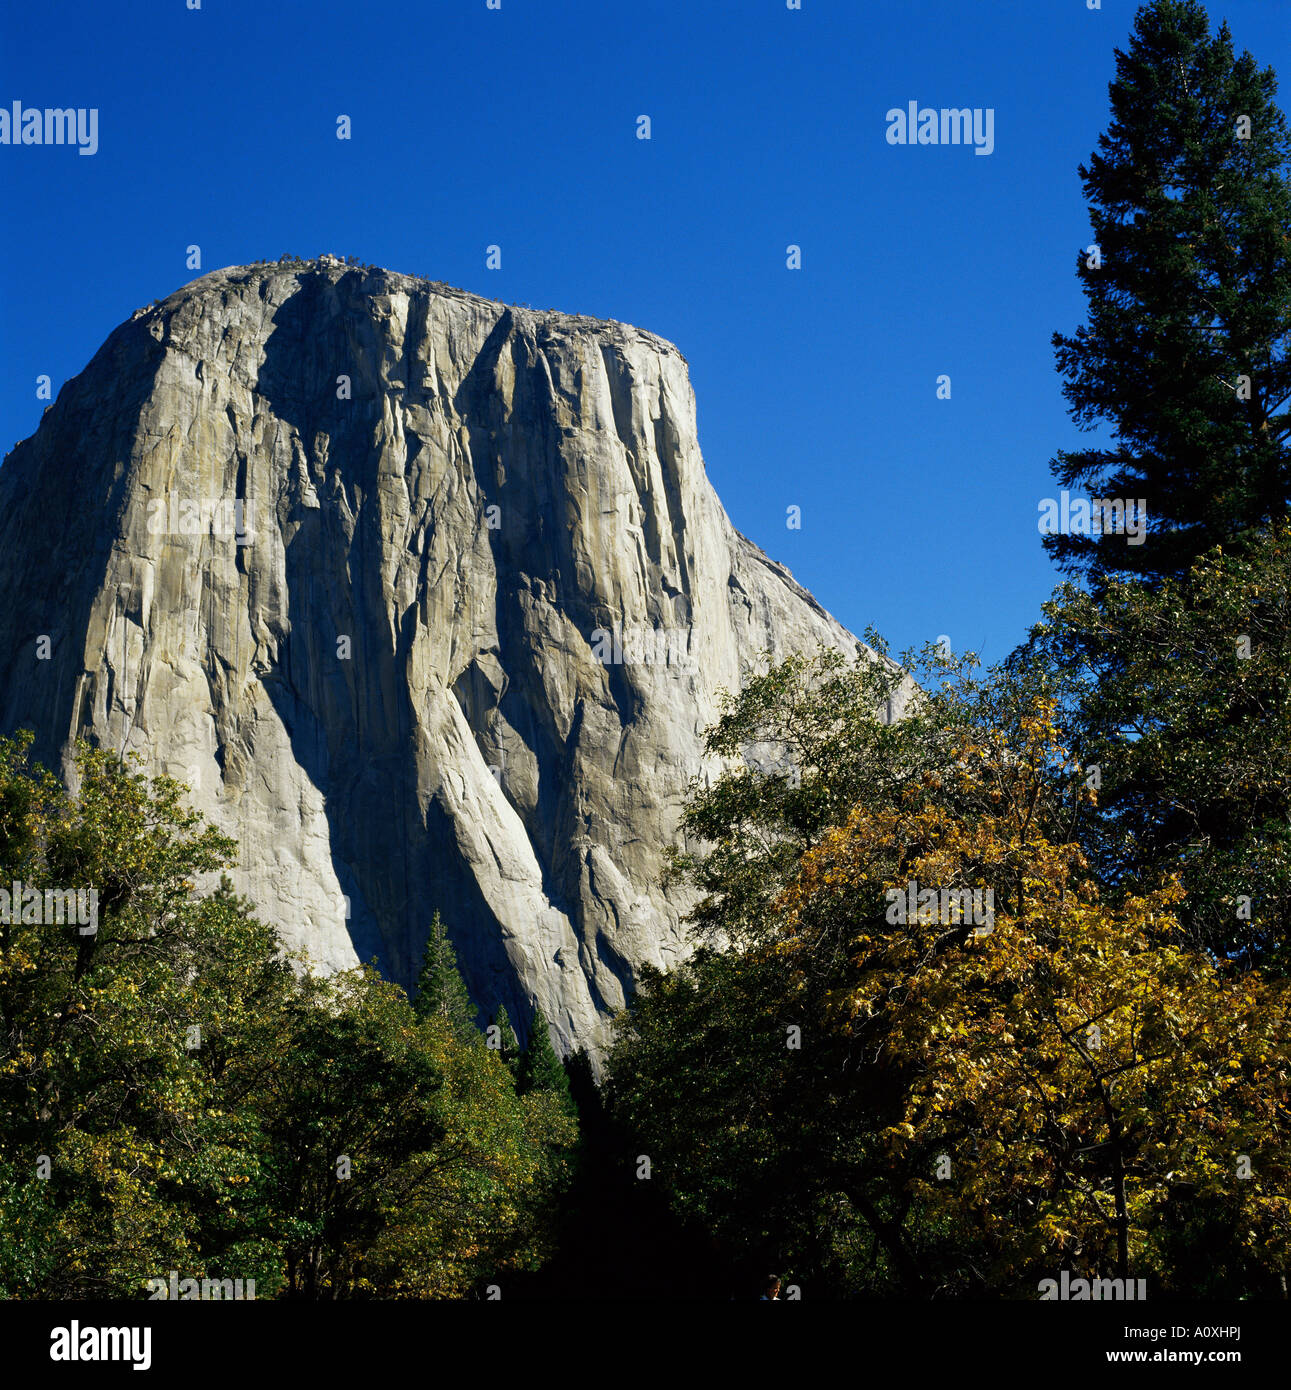 El Capitan Yosemite National Park UNESCO World Heritage Site California Stati Uniti d'America U S A America del Nord Foto Stock